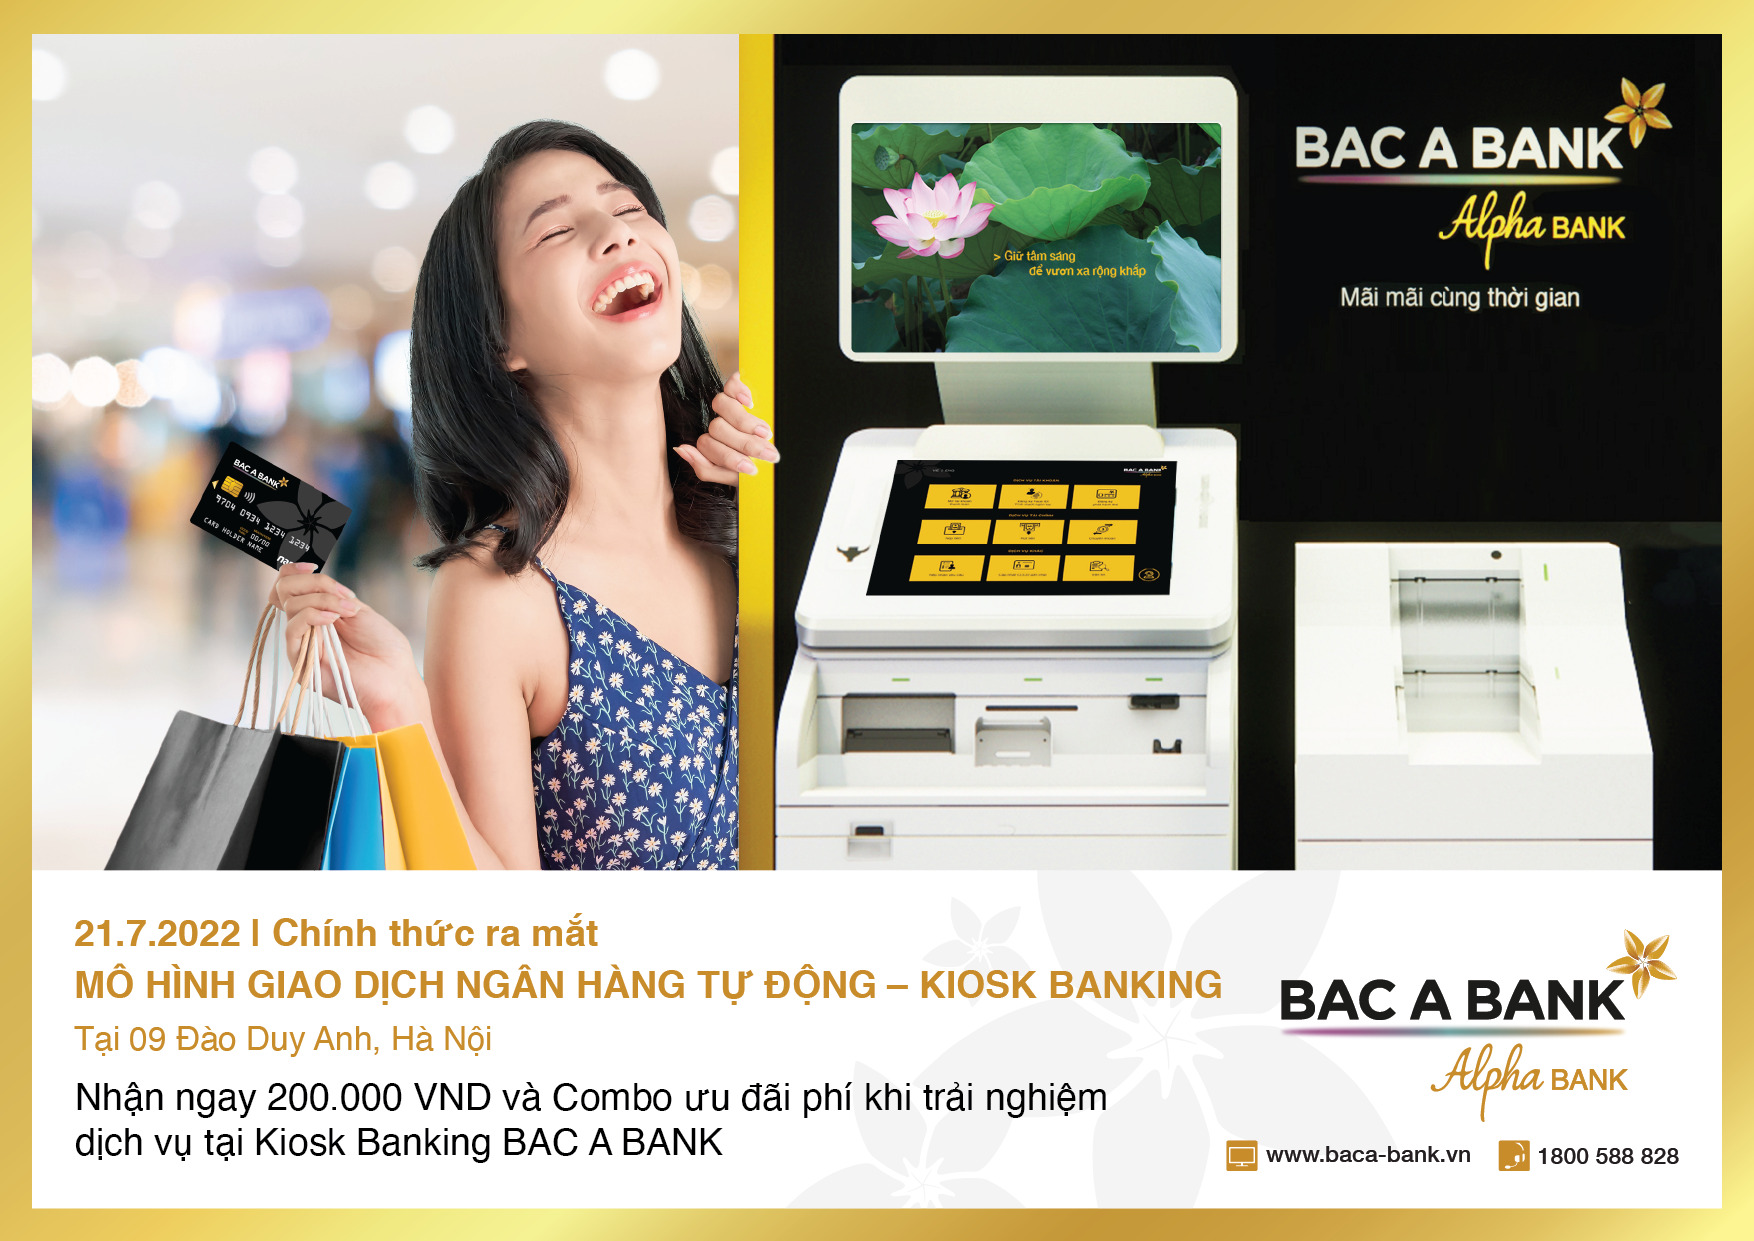 Kinh tế - BAC A BANK chính thức ra mắt mô hình giao dịch ngân hàng tự động - Kiosk Banking tại Hà Nội